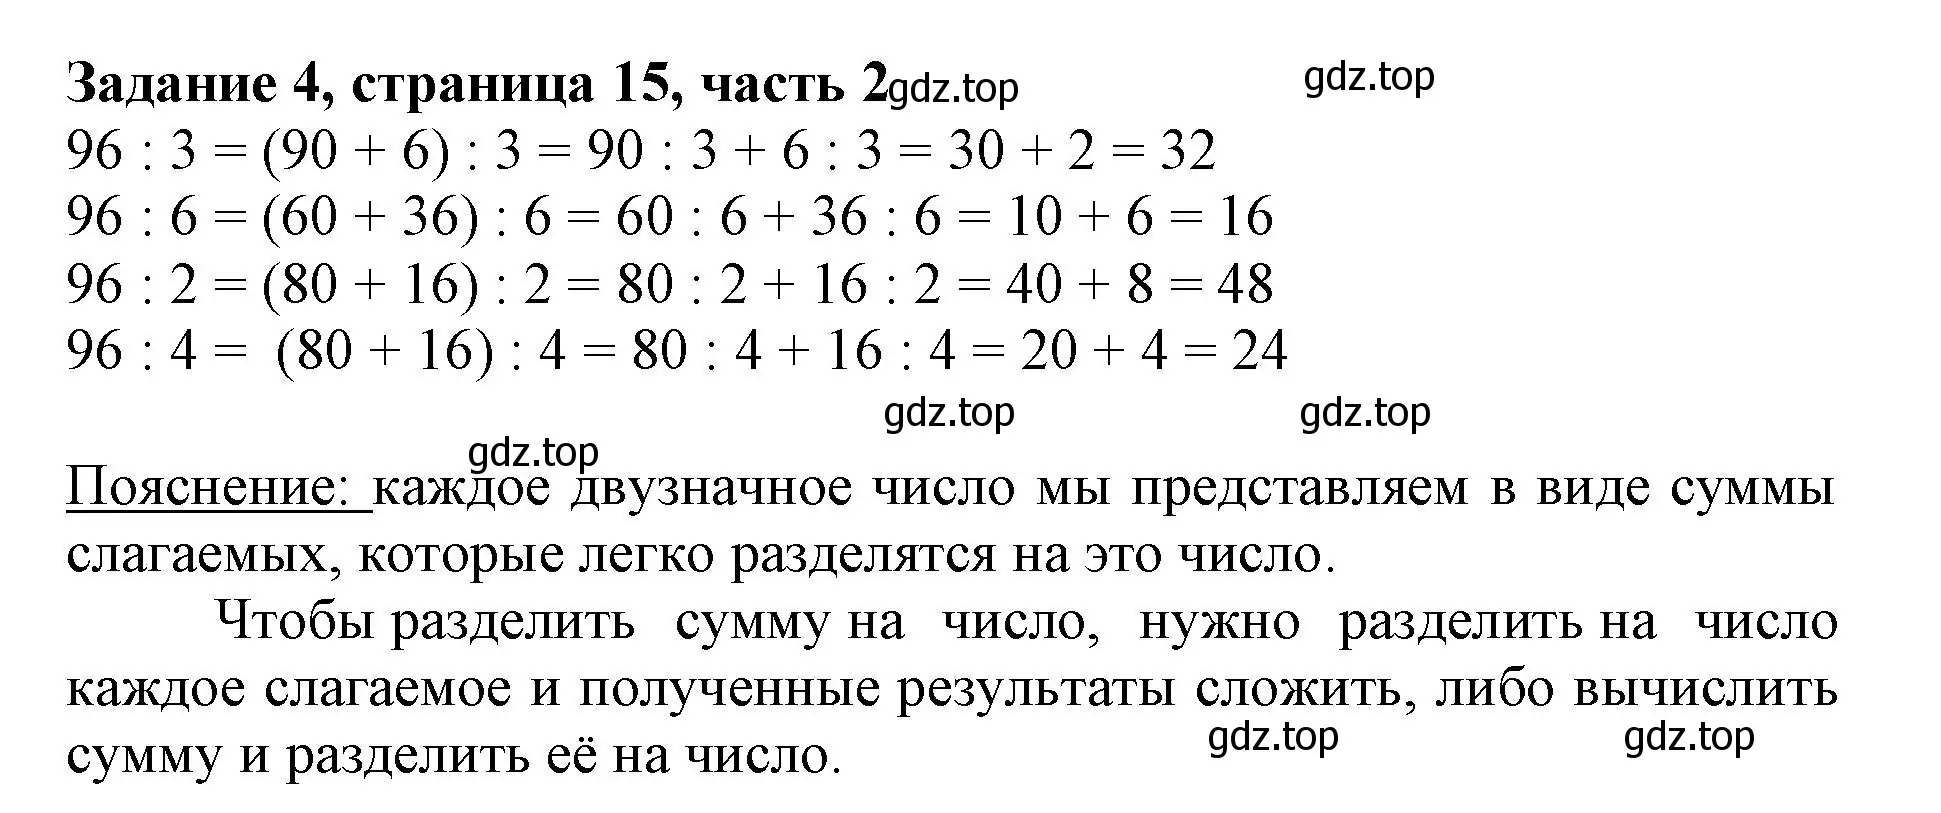 Решение номер 4 (страница 15) гдз по математике 3 класс Моро, Бантова, учебник 2 часть